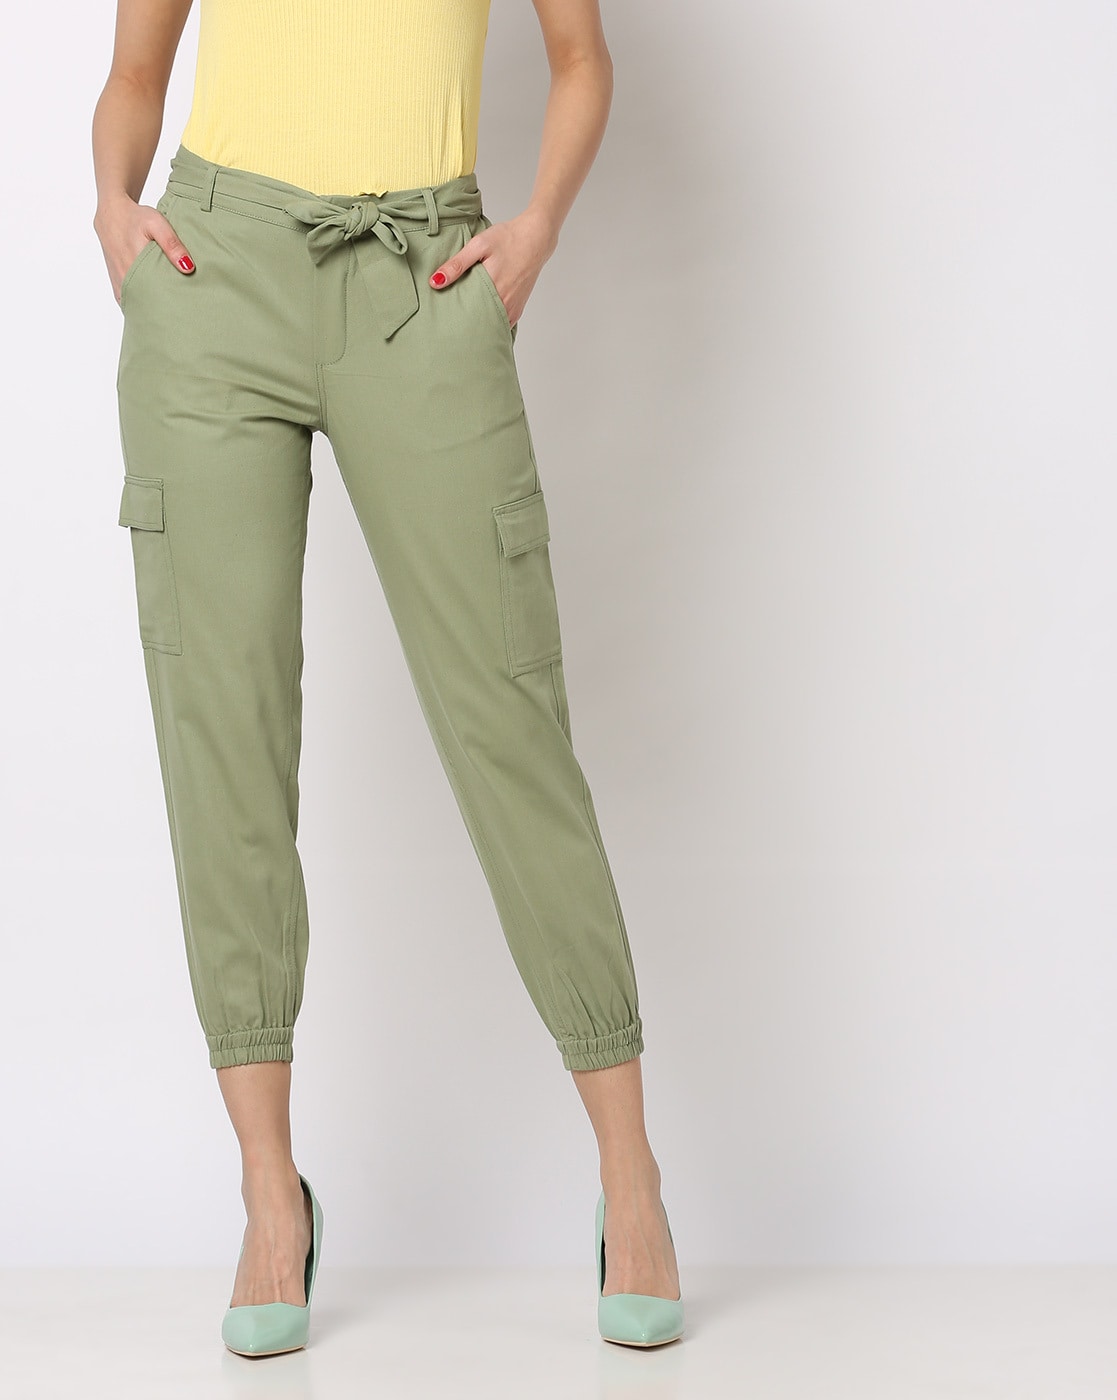 Buy Beige Trousers  Pants for Men by THOMAS SCOTT Online  Ajiocom